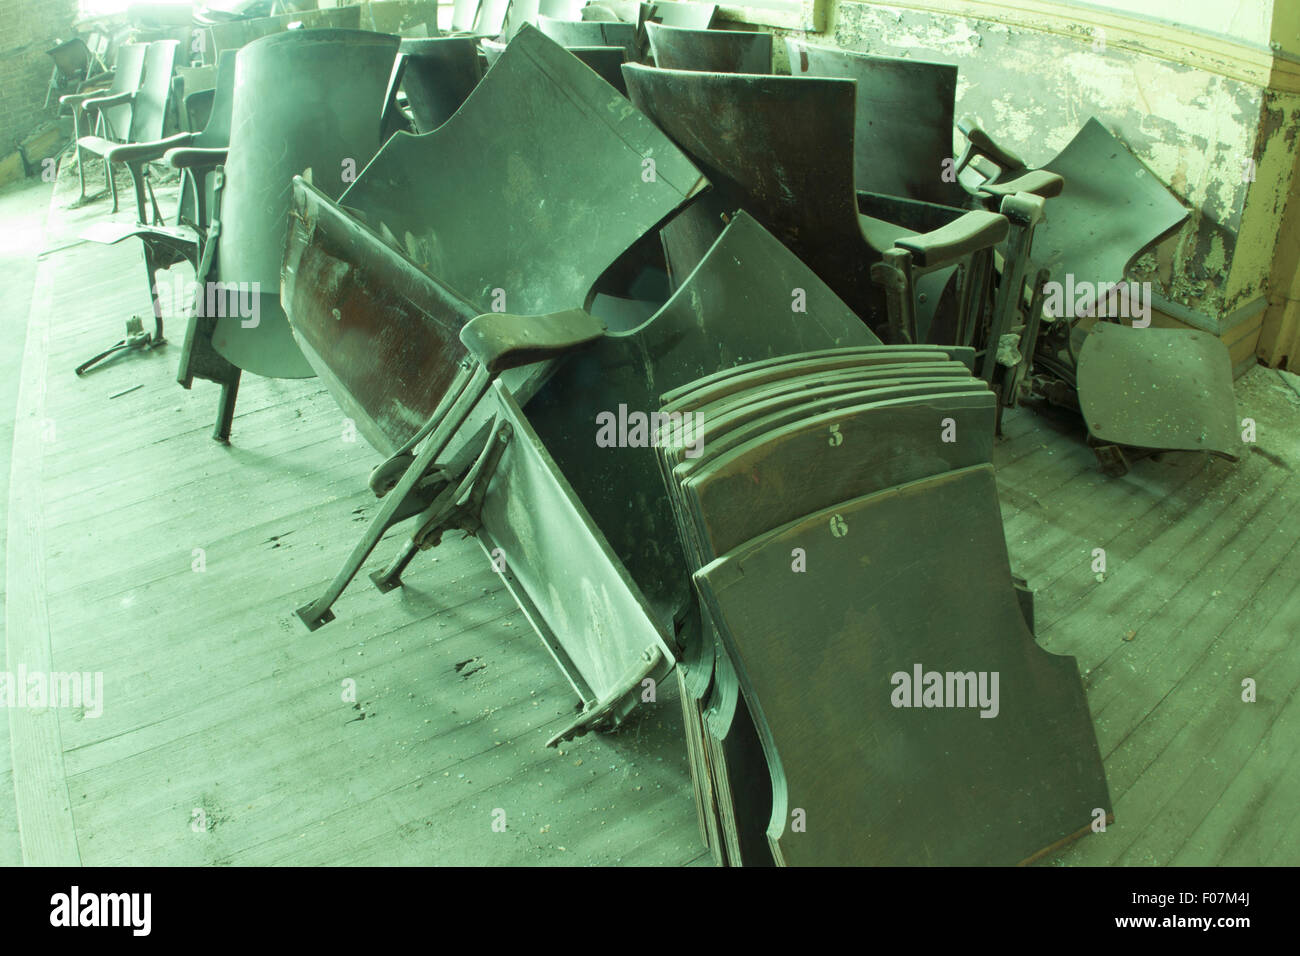 Broken theater seats in old school auditorium, Stock Photo